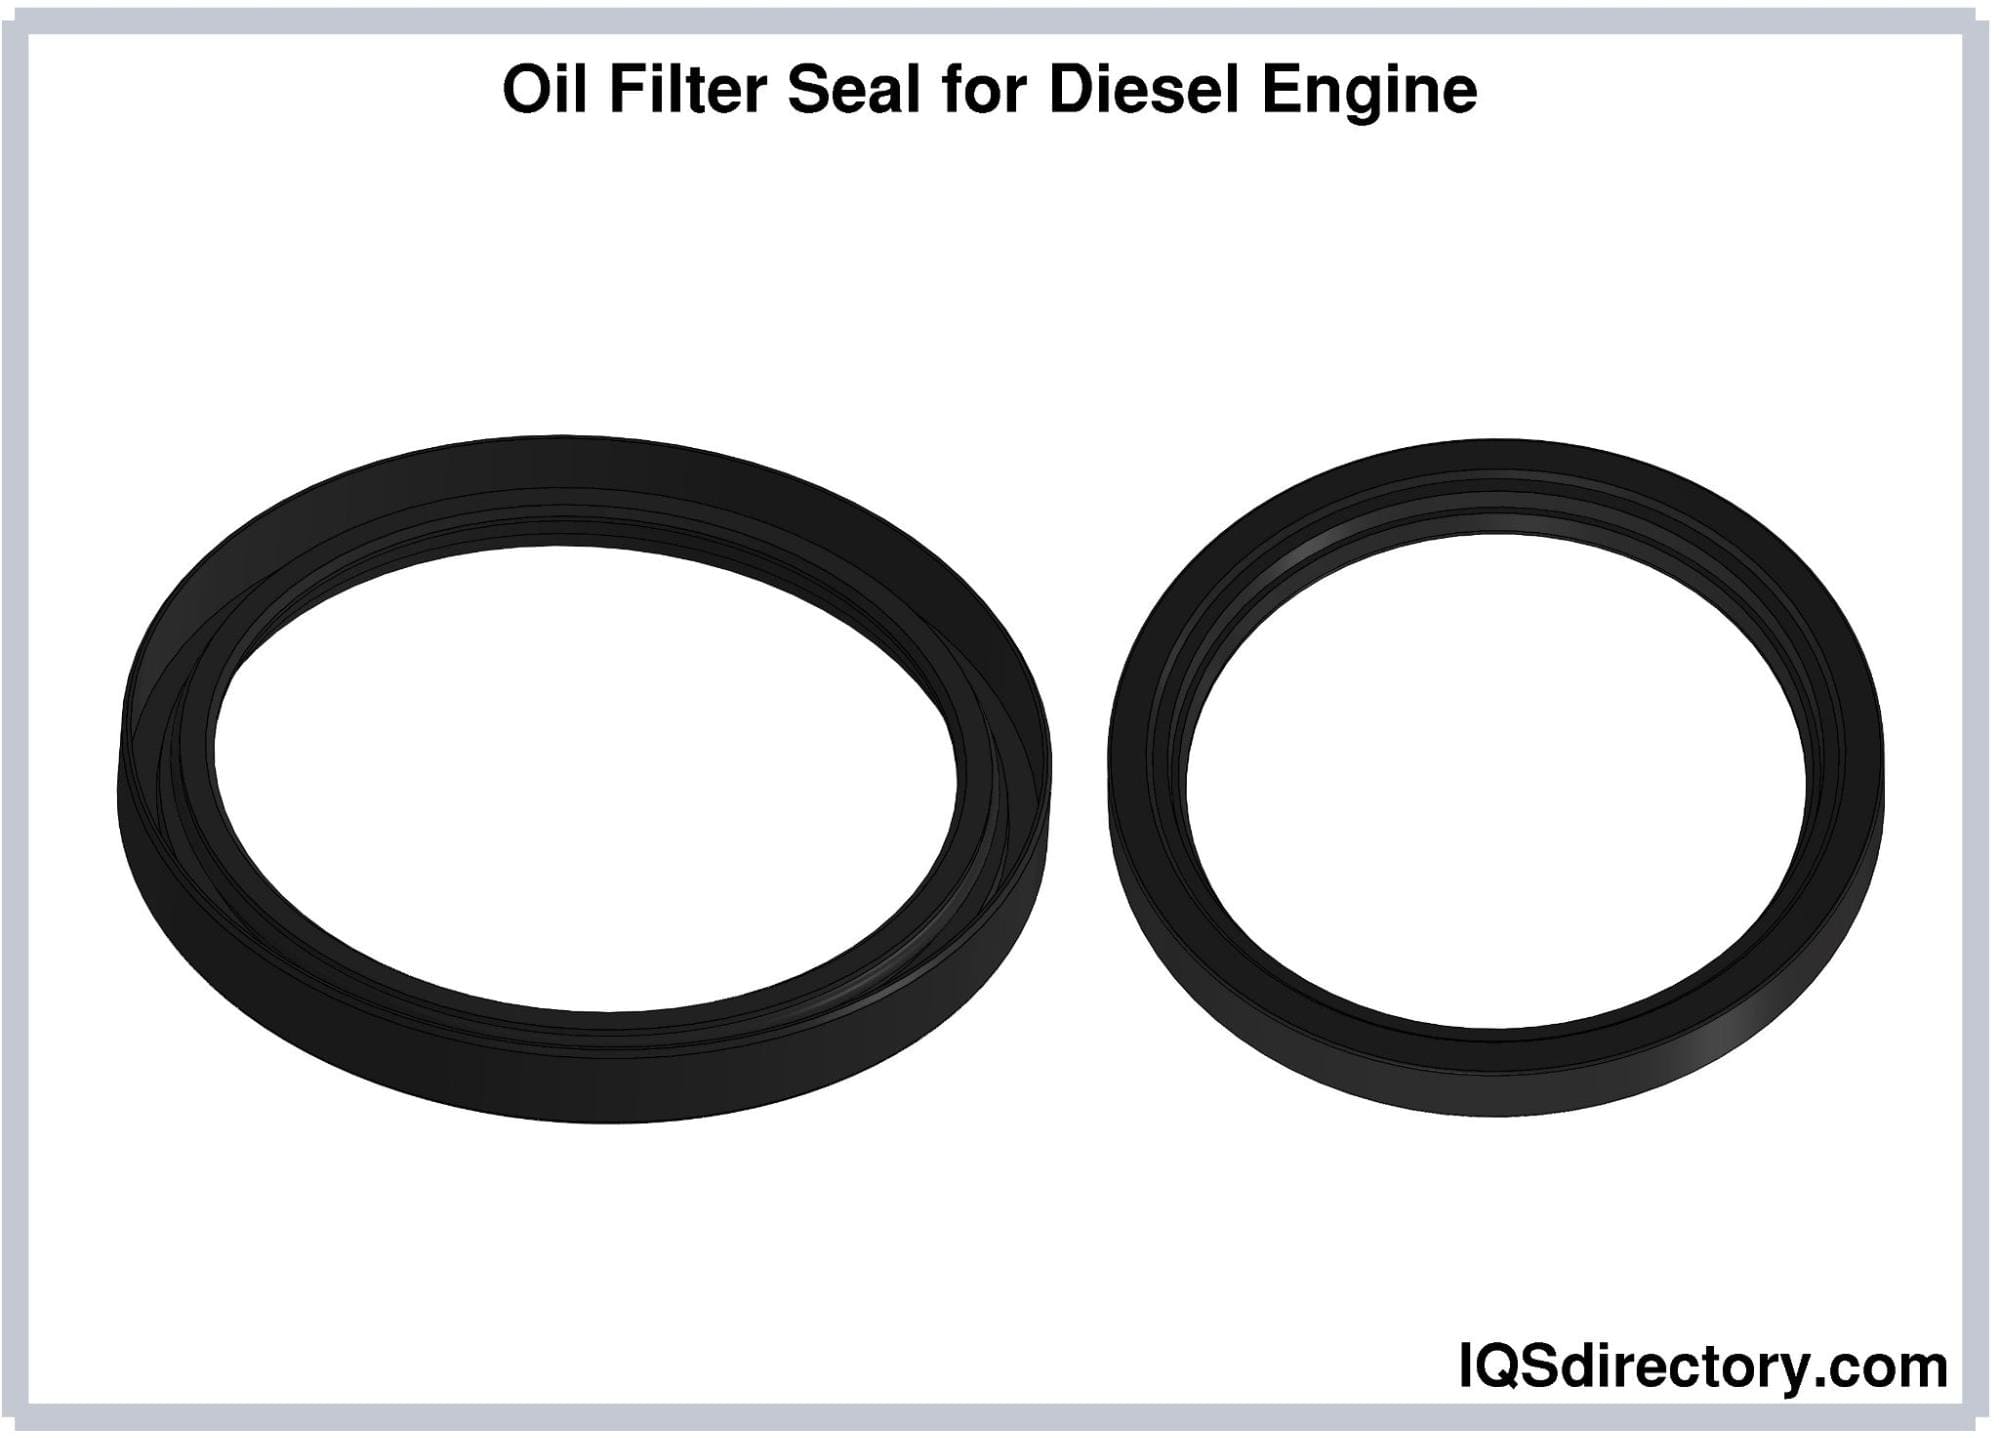 Oil Filter Seal for Diesel Engine